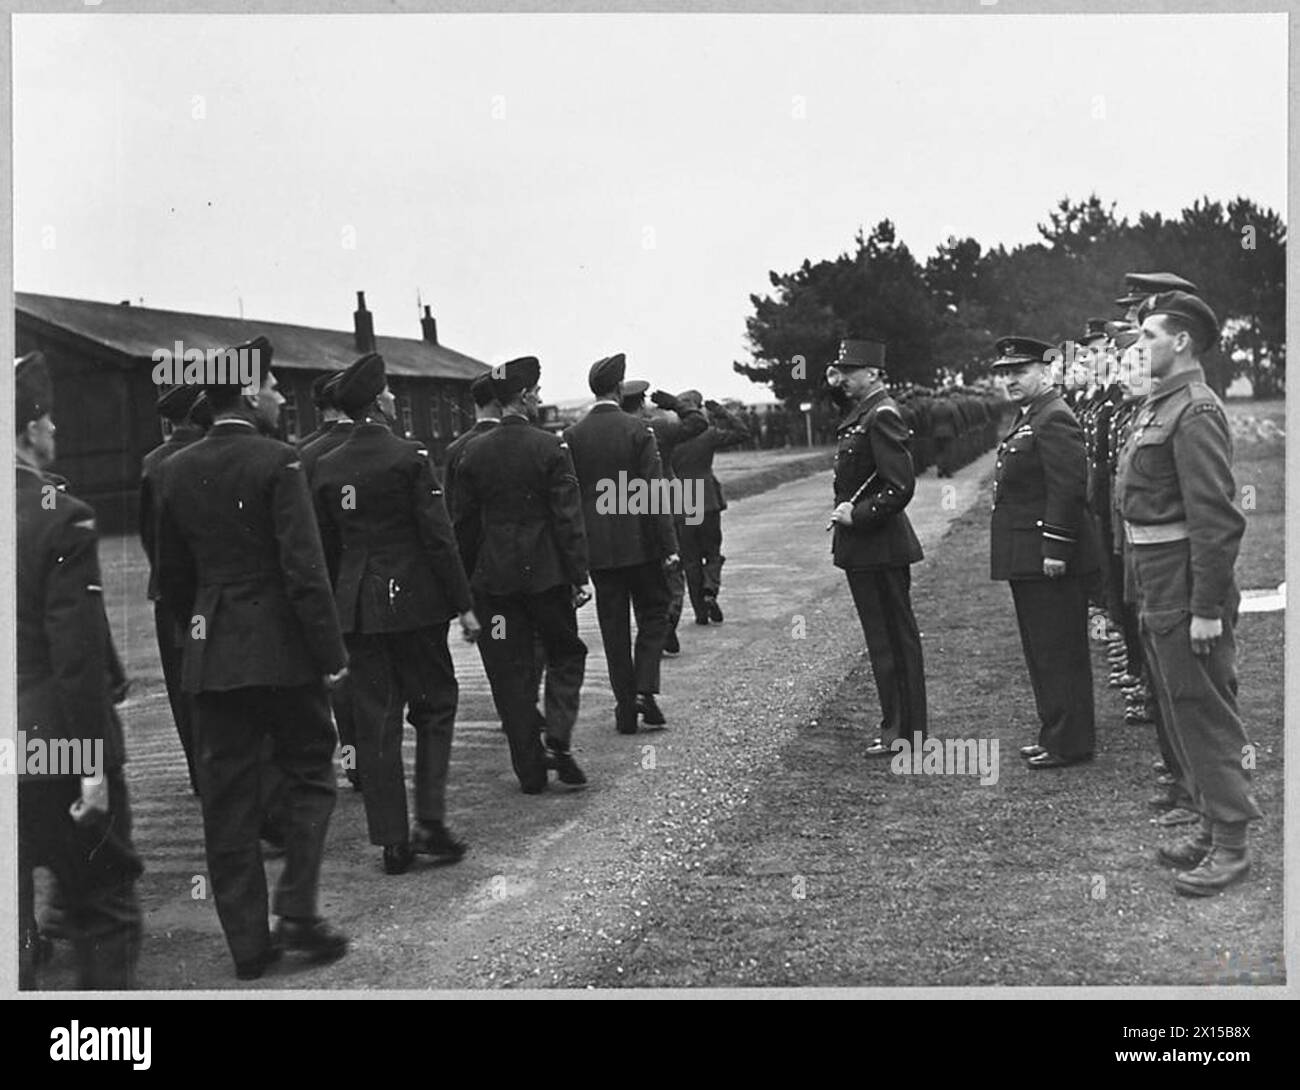 LE GÉNÉRAL KOENIG DÉCORE LE PERSONNEL DE la R.A.F. - le général Koenig, commandant des Forces françaises libres et actuel gouverneur de Paris, s'est envolé ce week-end vers un aérodrome en Angleterre pour décorer le personnel de la R.A.F. avec la Croix de Guerre pour leurs services dans la libération de la France. Voir A.M.Bulletin No.15730 - 25 septembre 1944. Le général Keonig prend le salut lors d'une marche passée de la R.A.F. le A.O.C. Air Vice Marshal Hollinghurst - est juste derrière le général avec les récipiendaires de la Croix de Guerre à son arrière Royal Air Force Banque D'Images